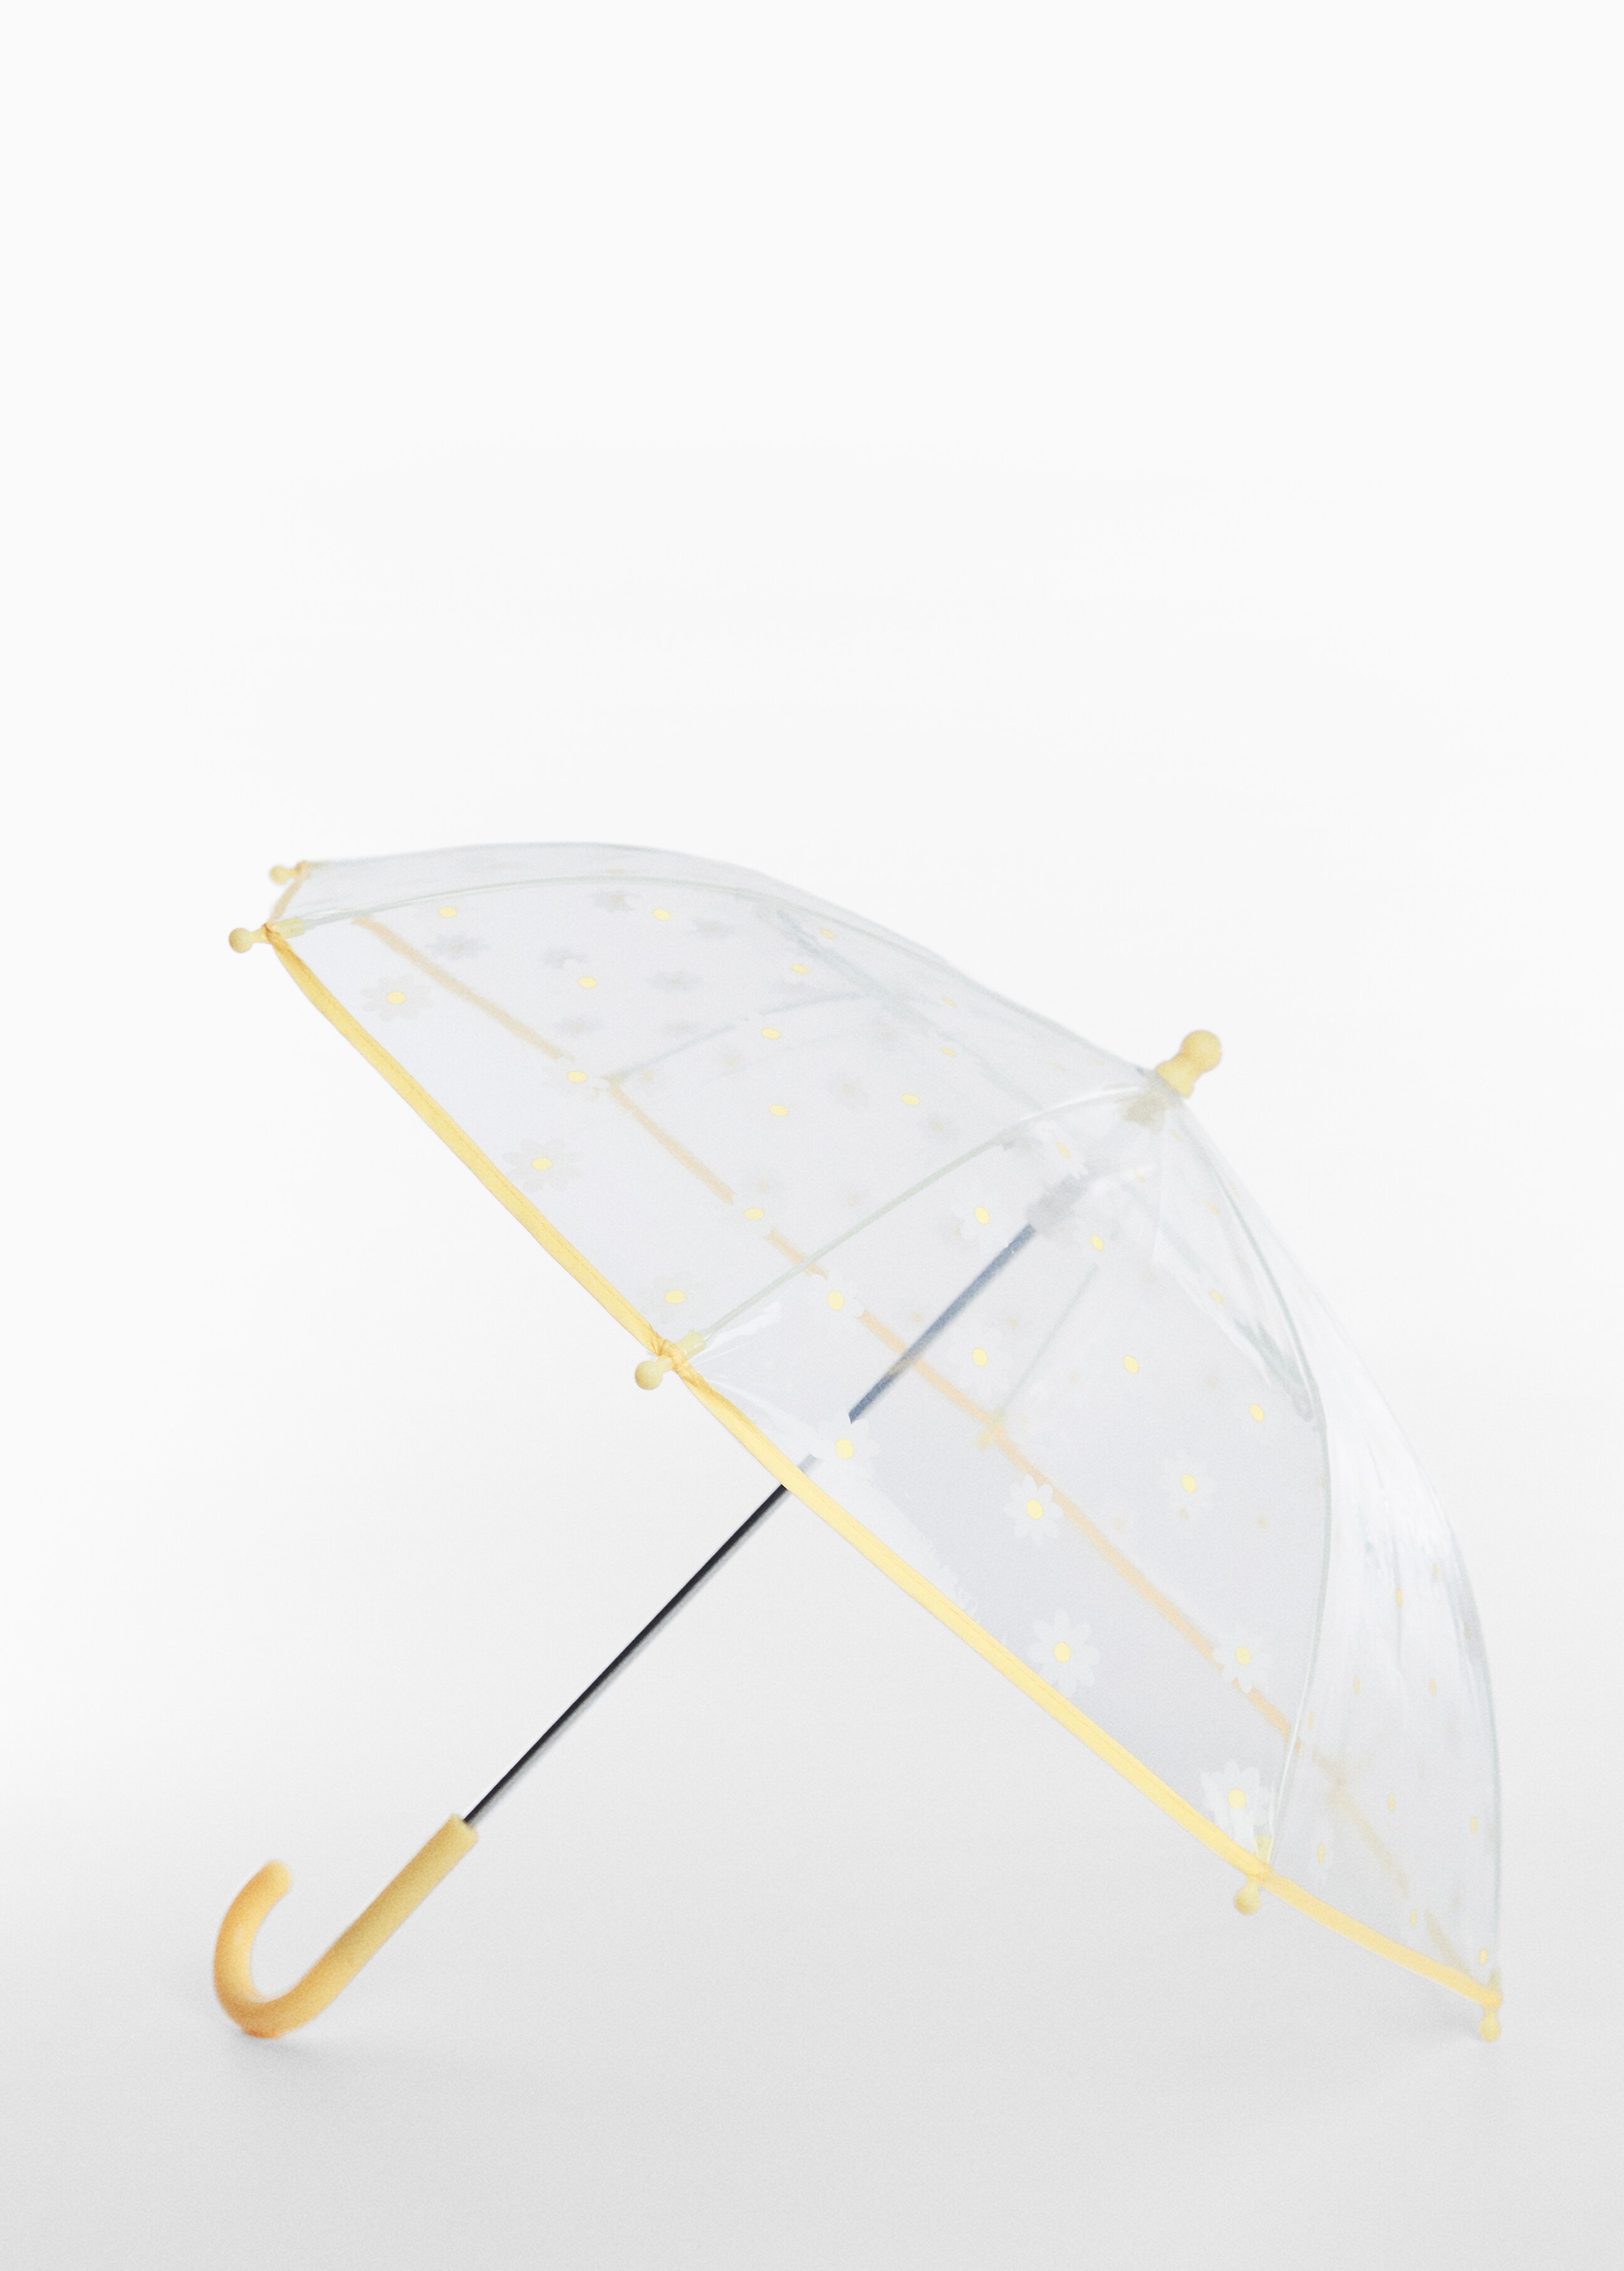 Parapluie transparent imprimé - Plan moyen